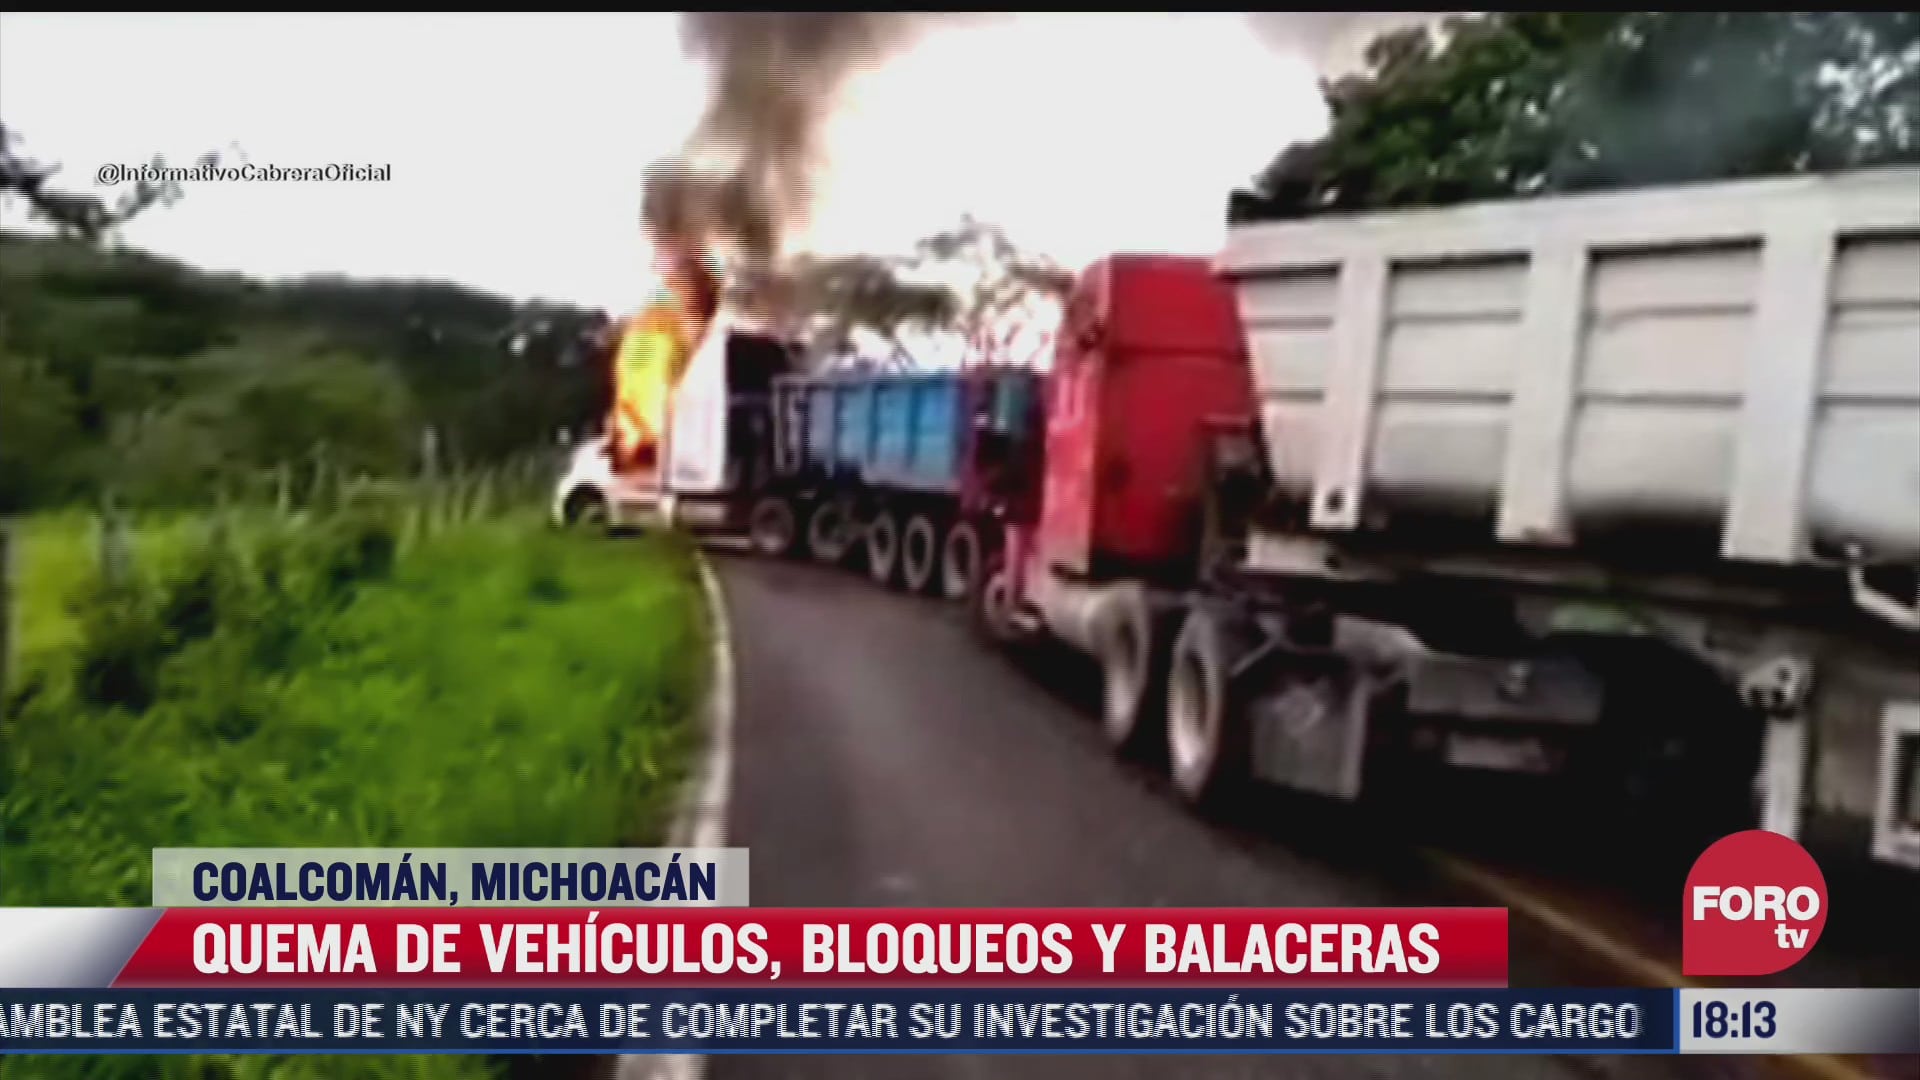 video quema de vehiculos bloqueos y balaceras en michoacan